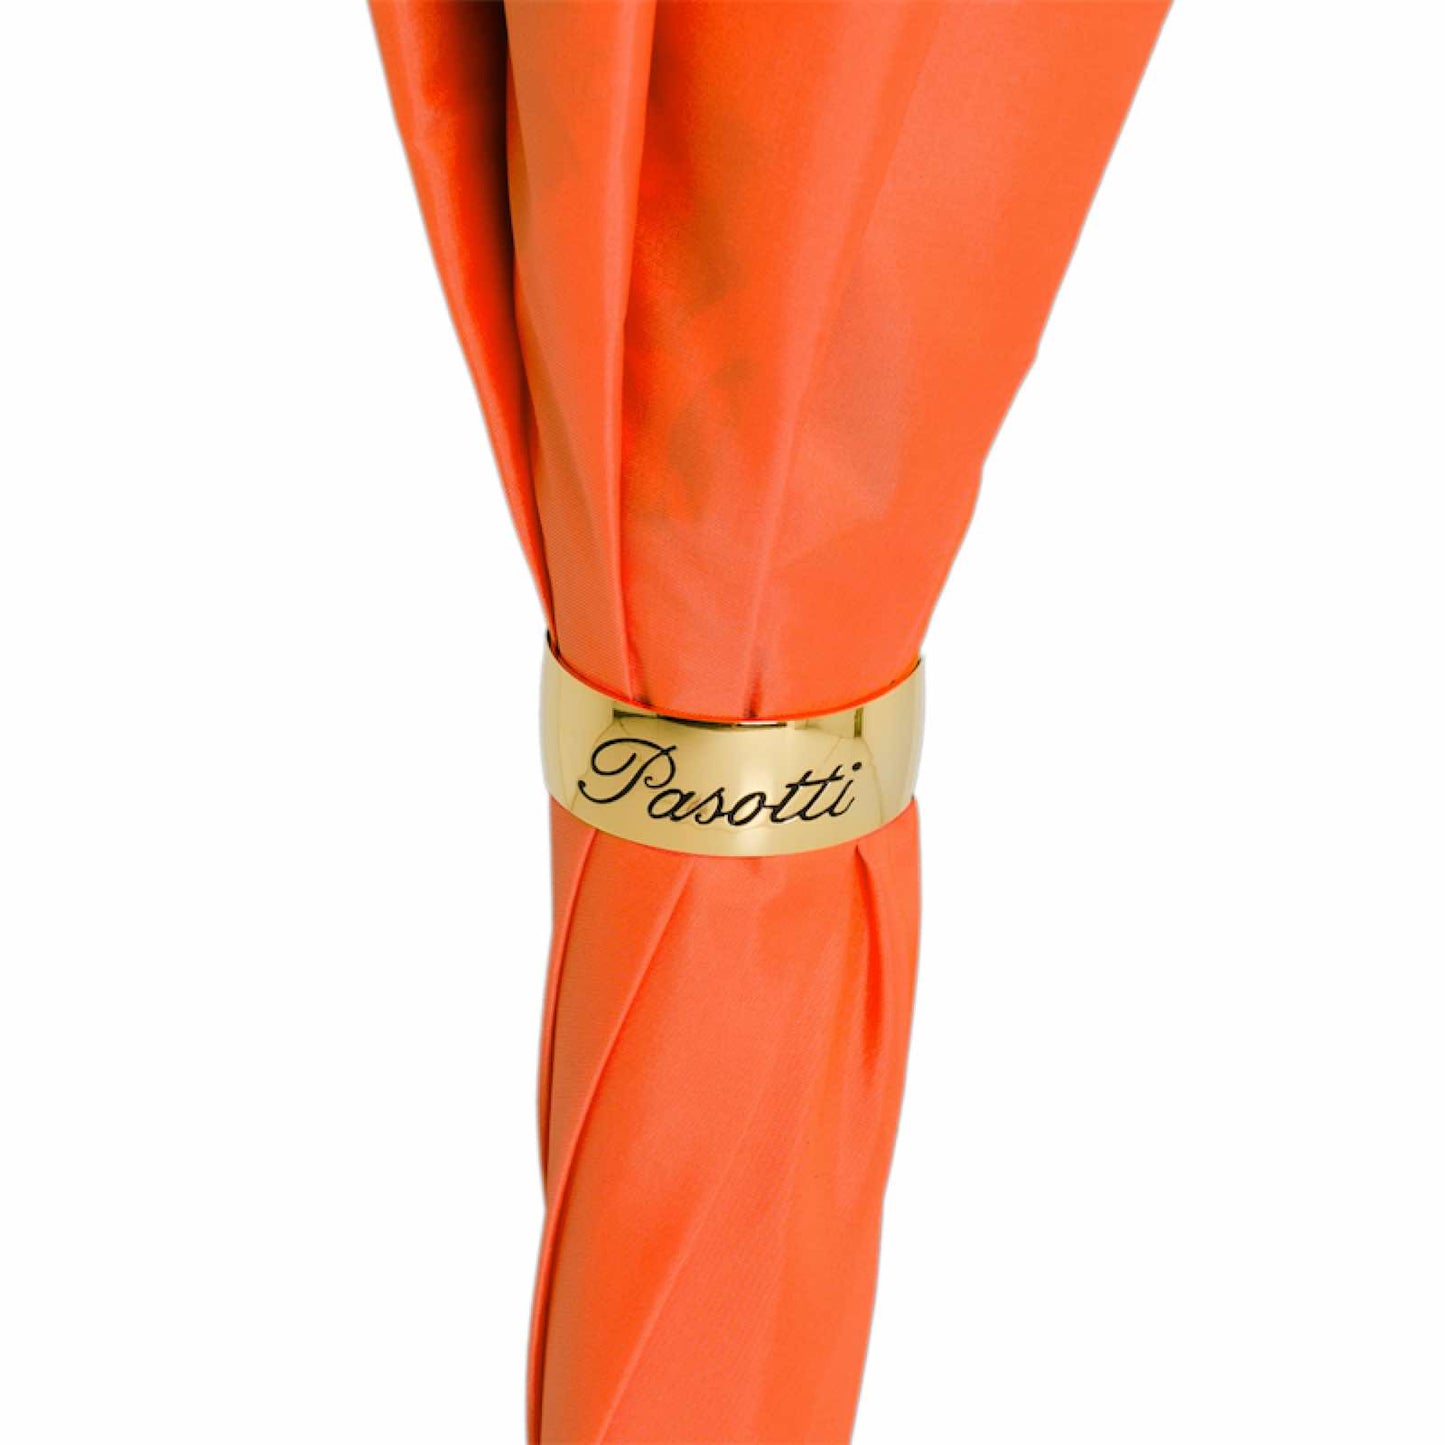 Umbrella cane women's orange with floral print Pasotti 189 VA936-1 F38